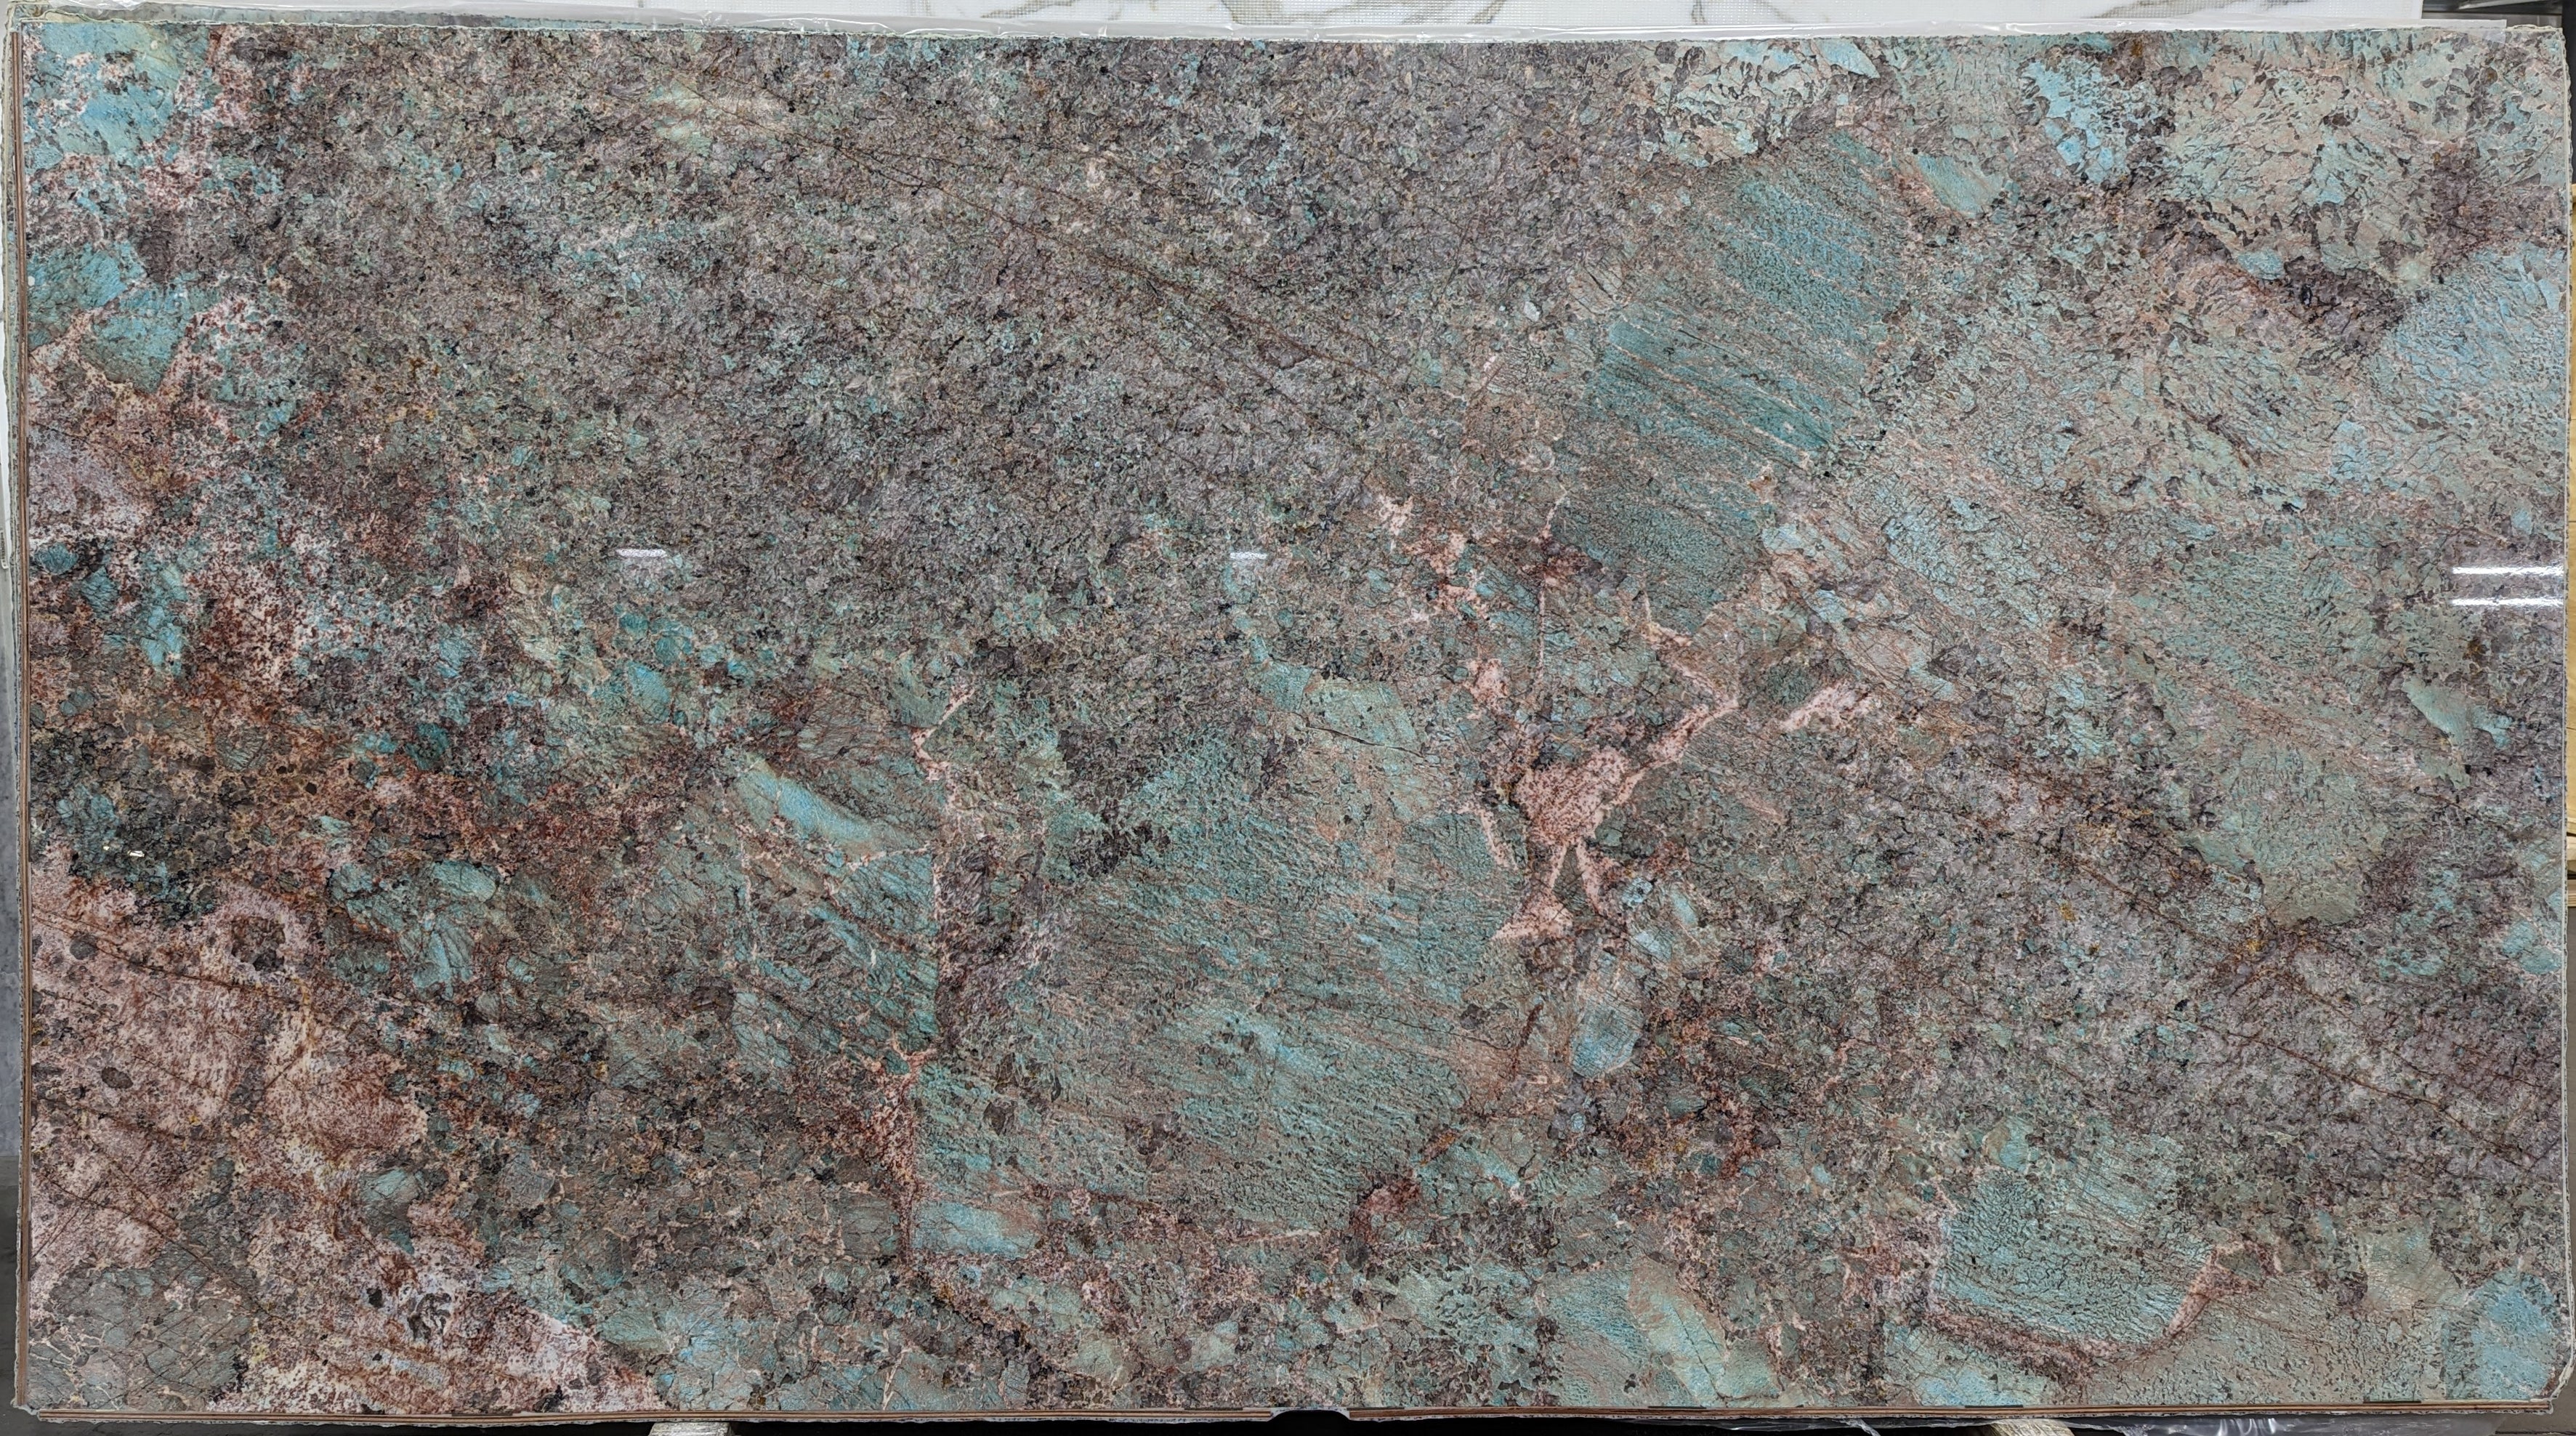  Amazonite Quartzite Slab 3/4  Polished Stone - 20921#27 -  64X119 